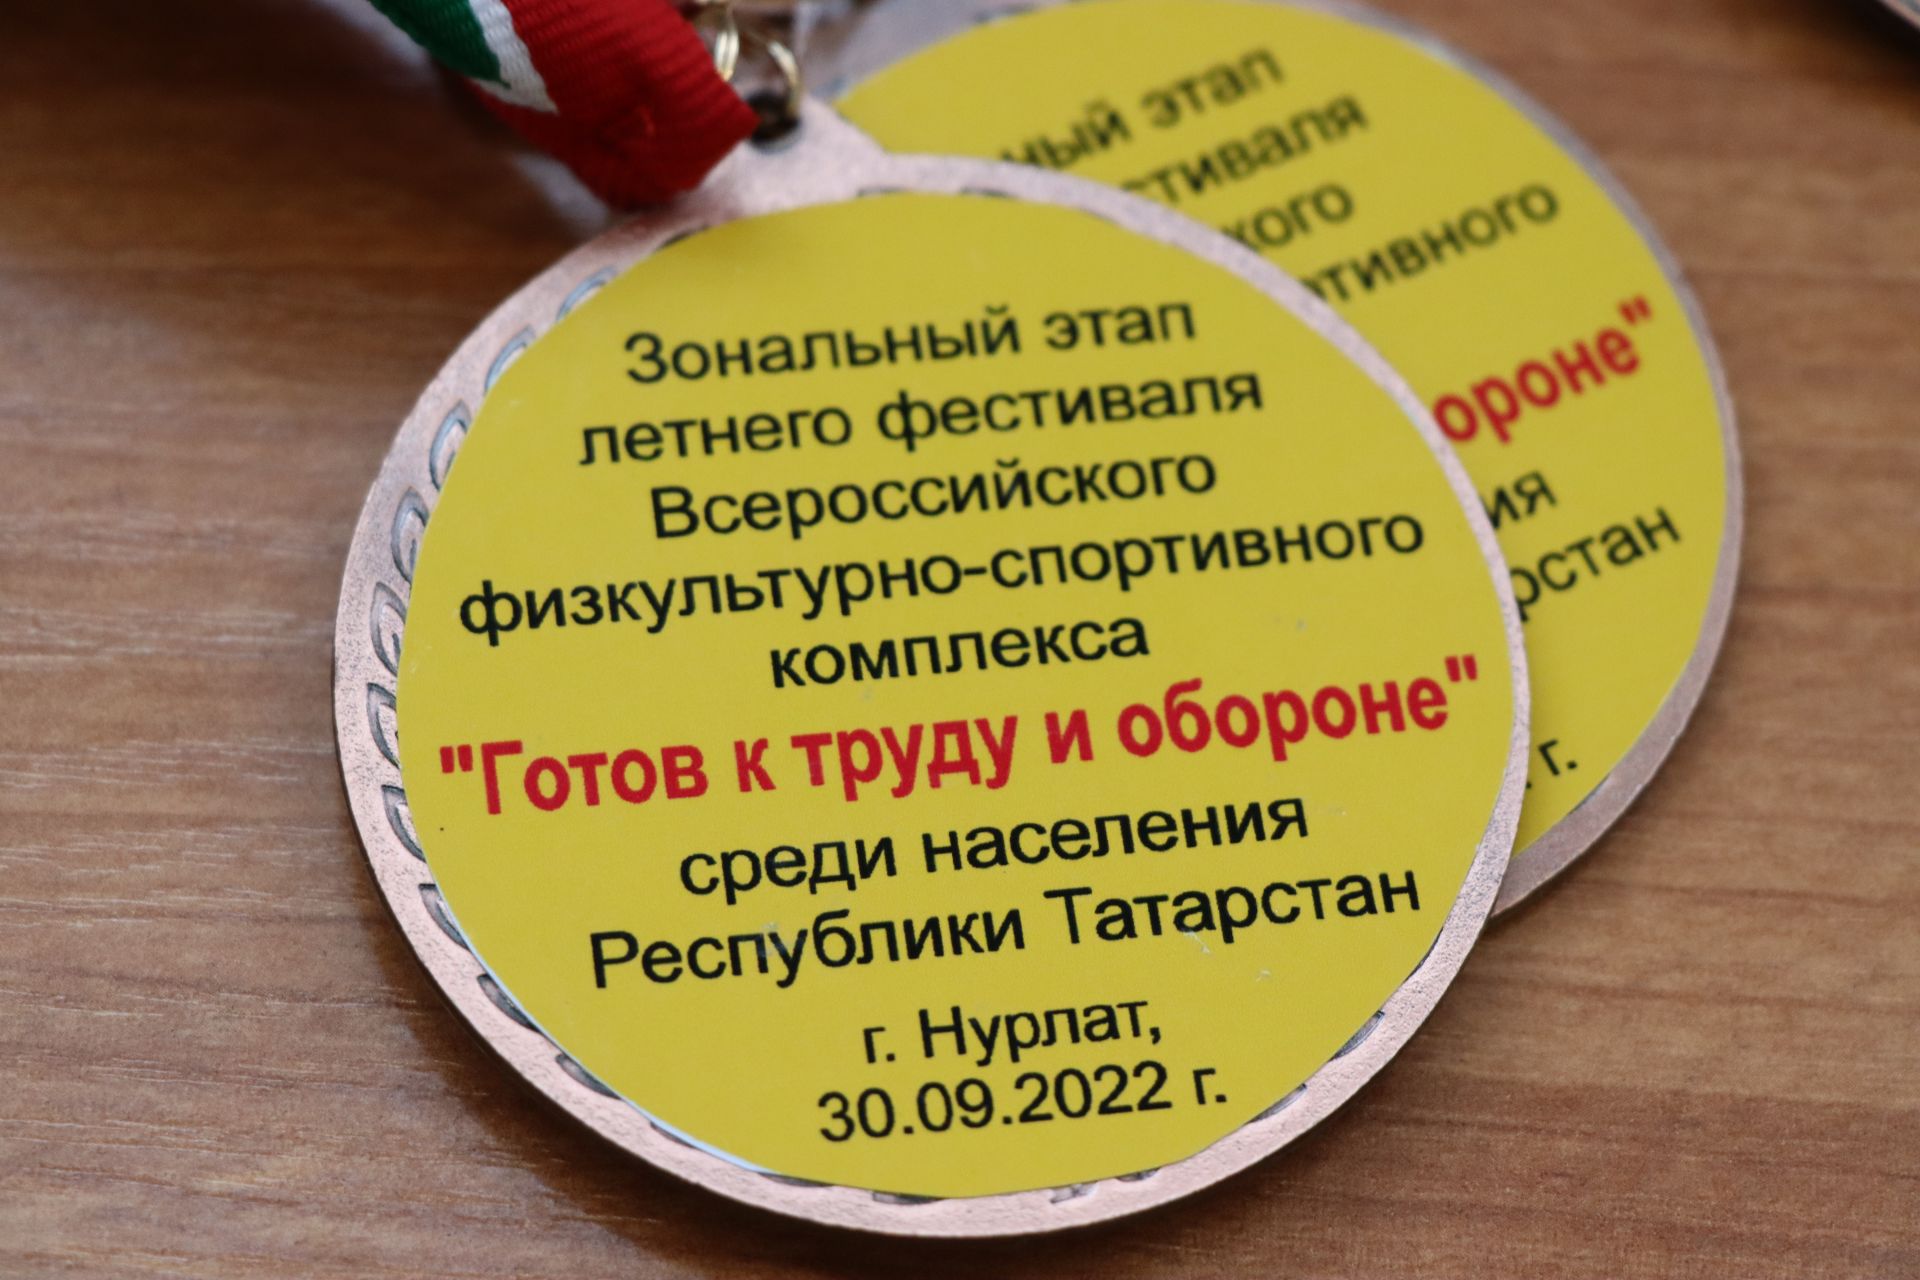 Команда Нурлатского района стала победителем зонального этапа Летнего фестиваля ГТО